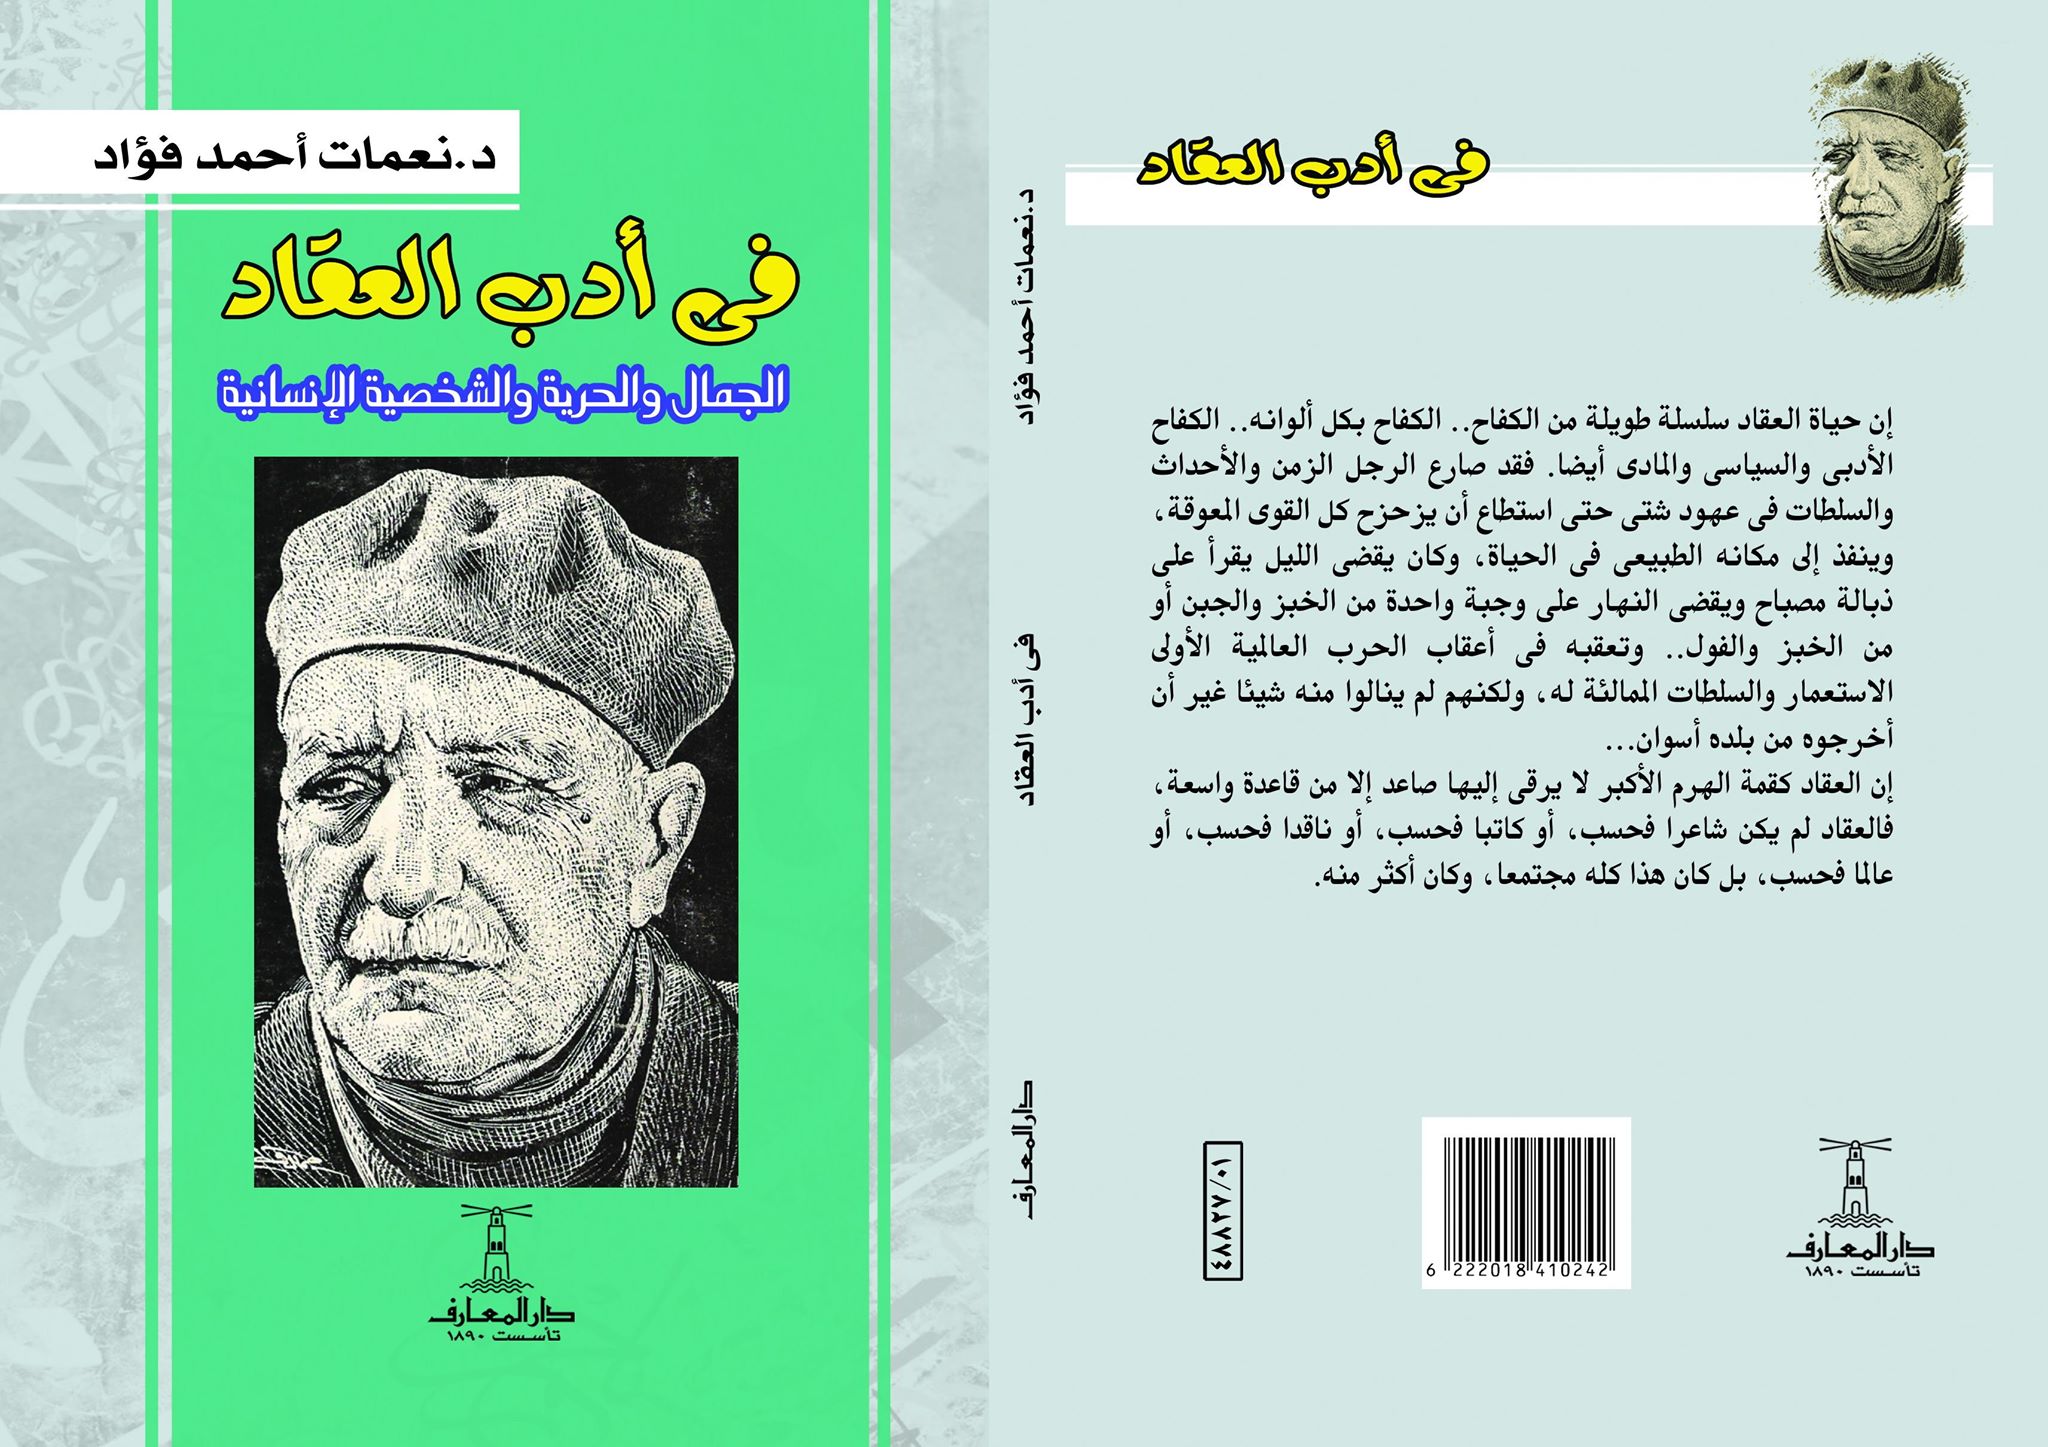   الجمال والحرية والشخصية الإنسانية.. حياة العقاد الأدبية للكاتبة نعمات أحمد فؤاد